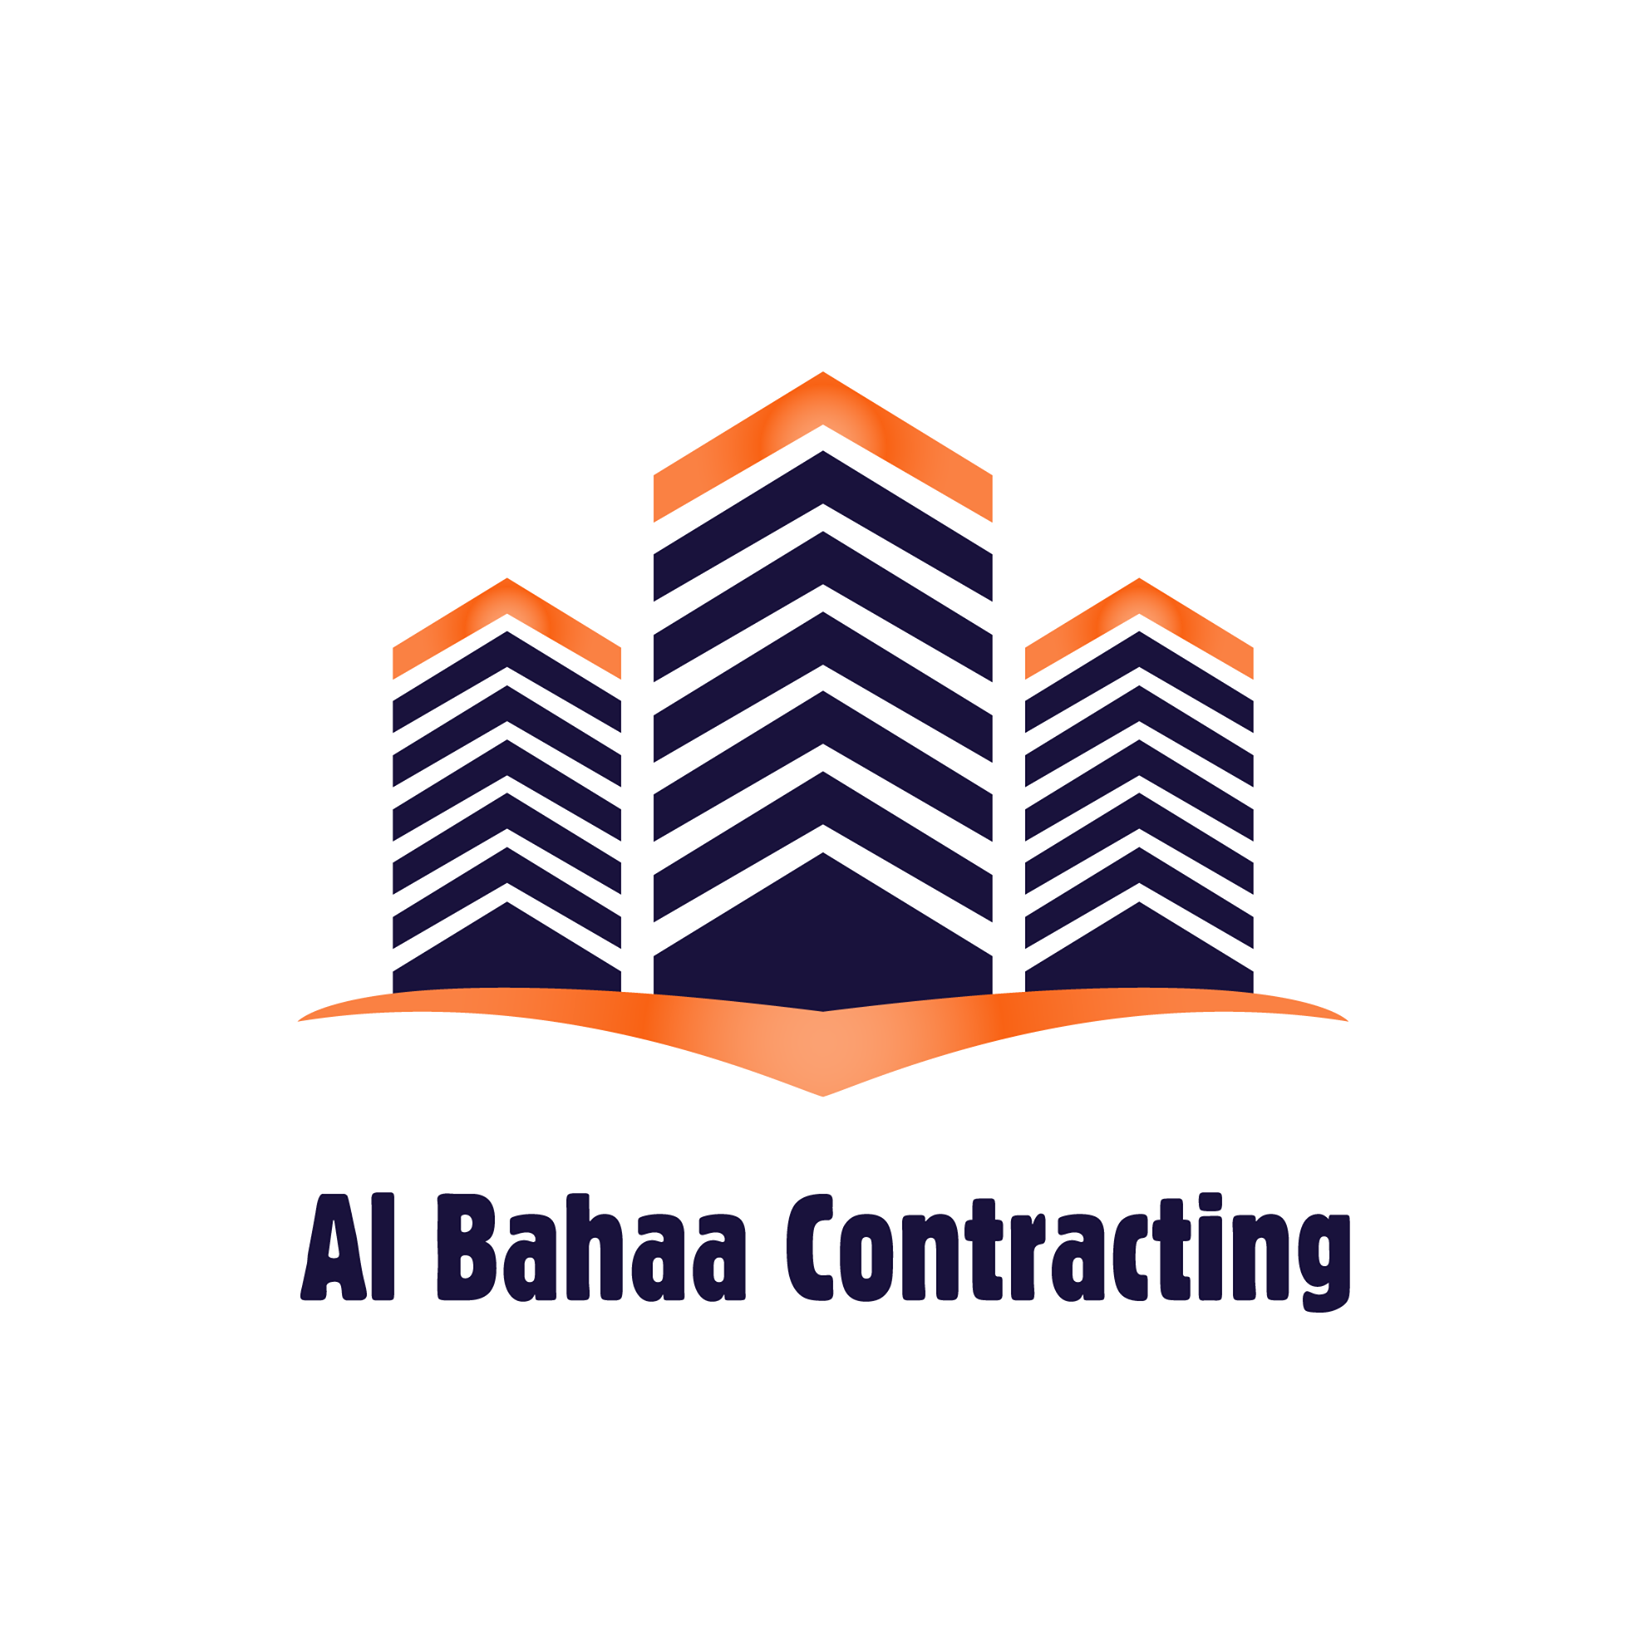 Al bahaa Contracting